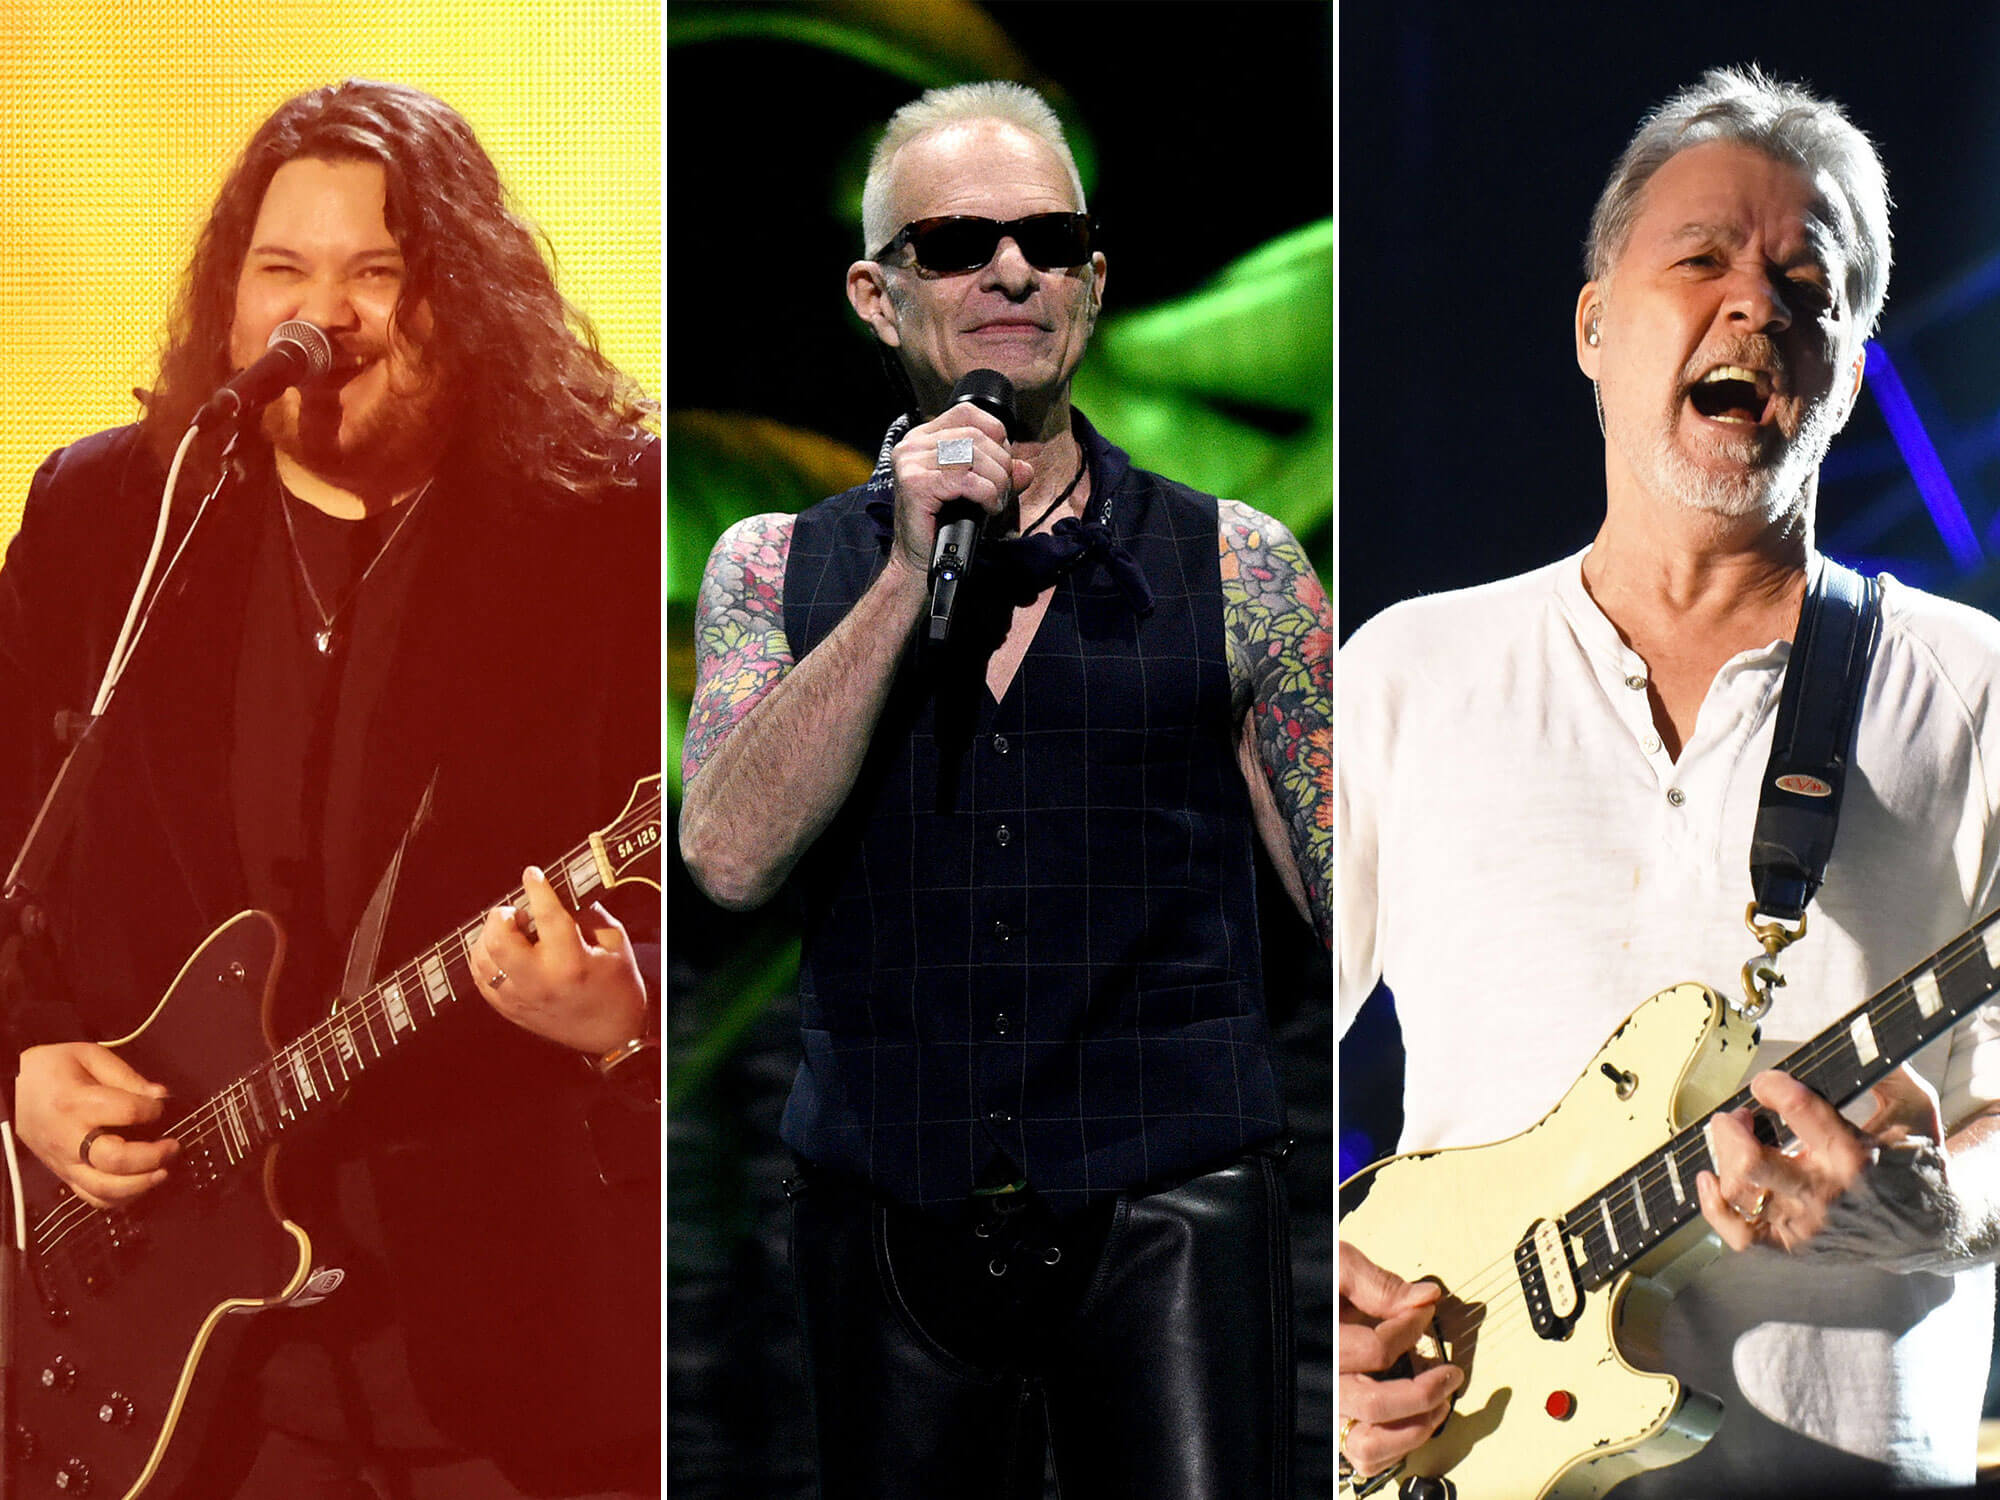 [L-R] Wolfgang Van Halen, David Lee Roth and Eddie Van Halen